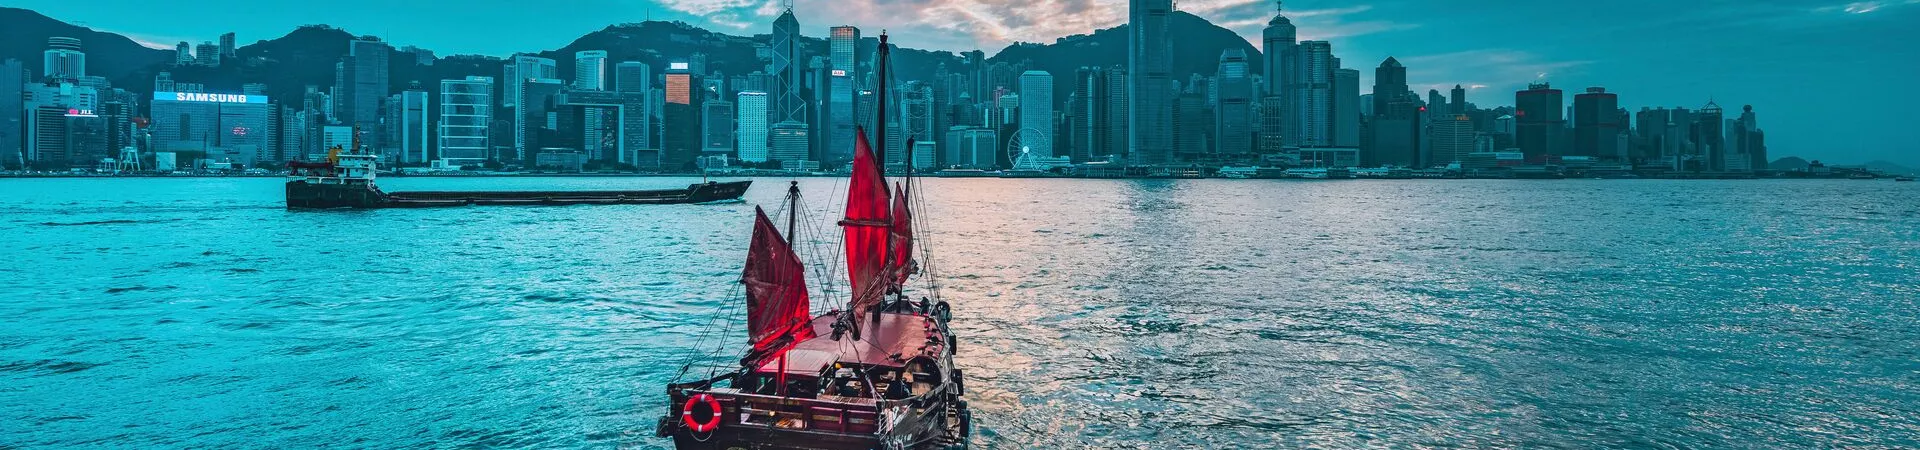 Large Boat Of Hong Kong